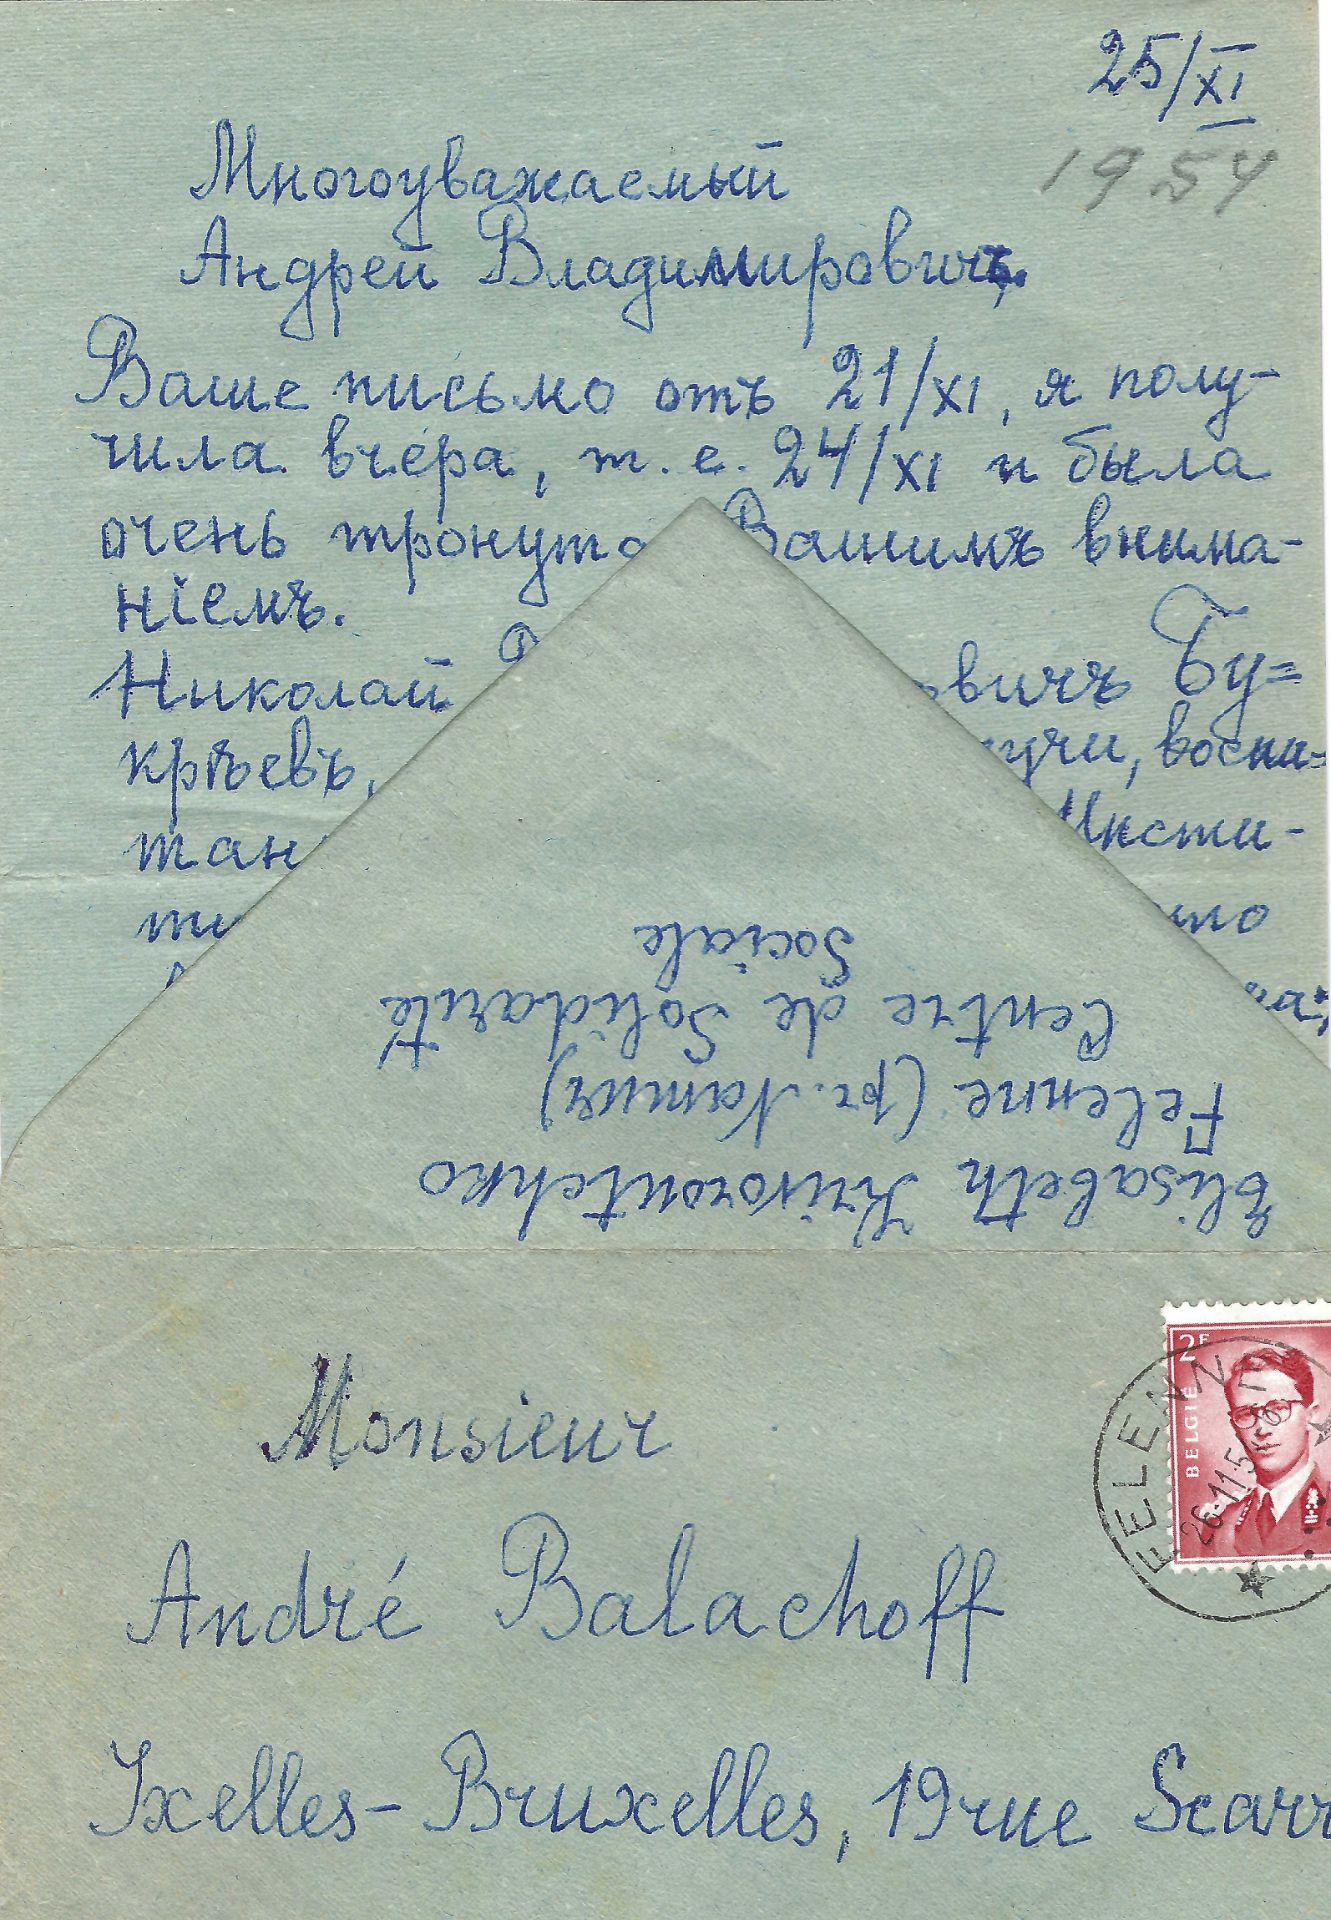 ARCHIVES d’Andreï BALASHOV (1889-1969) • Correspondances avec A.Efremov (1878-1964) en France, V. - Image 18 of 39